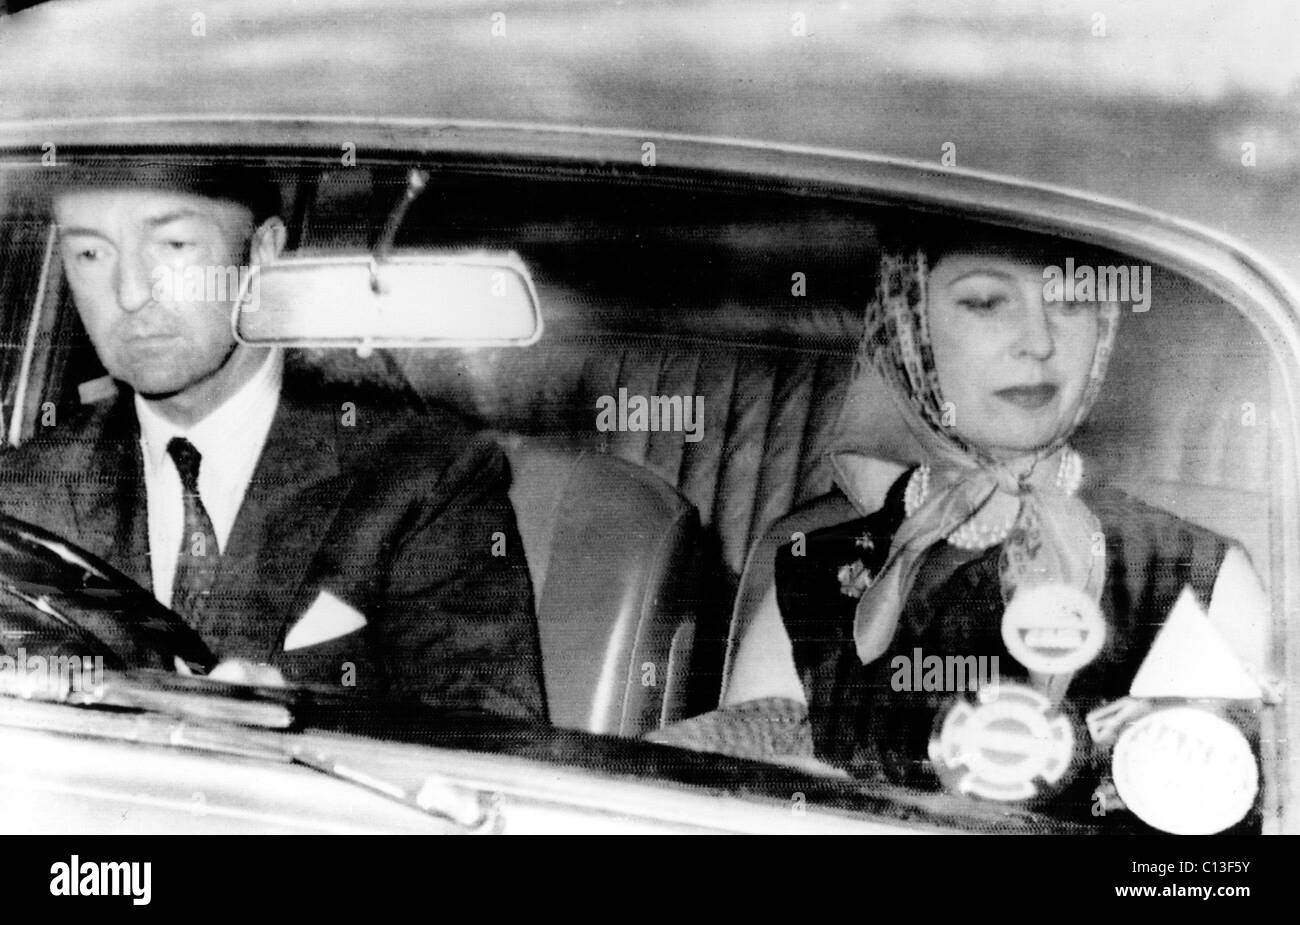 Ancien ministre britannique de la Guerre John Profumo et épouse Valerie Hobson arrivent à la maison peu après Profumo démissionna de son poste. Banque D'Images